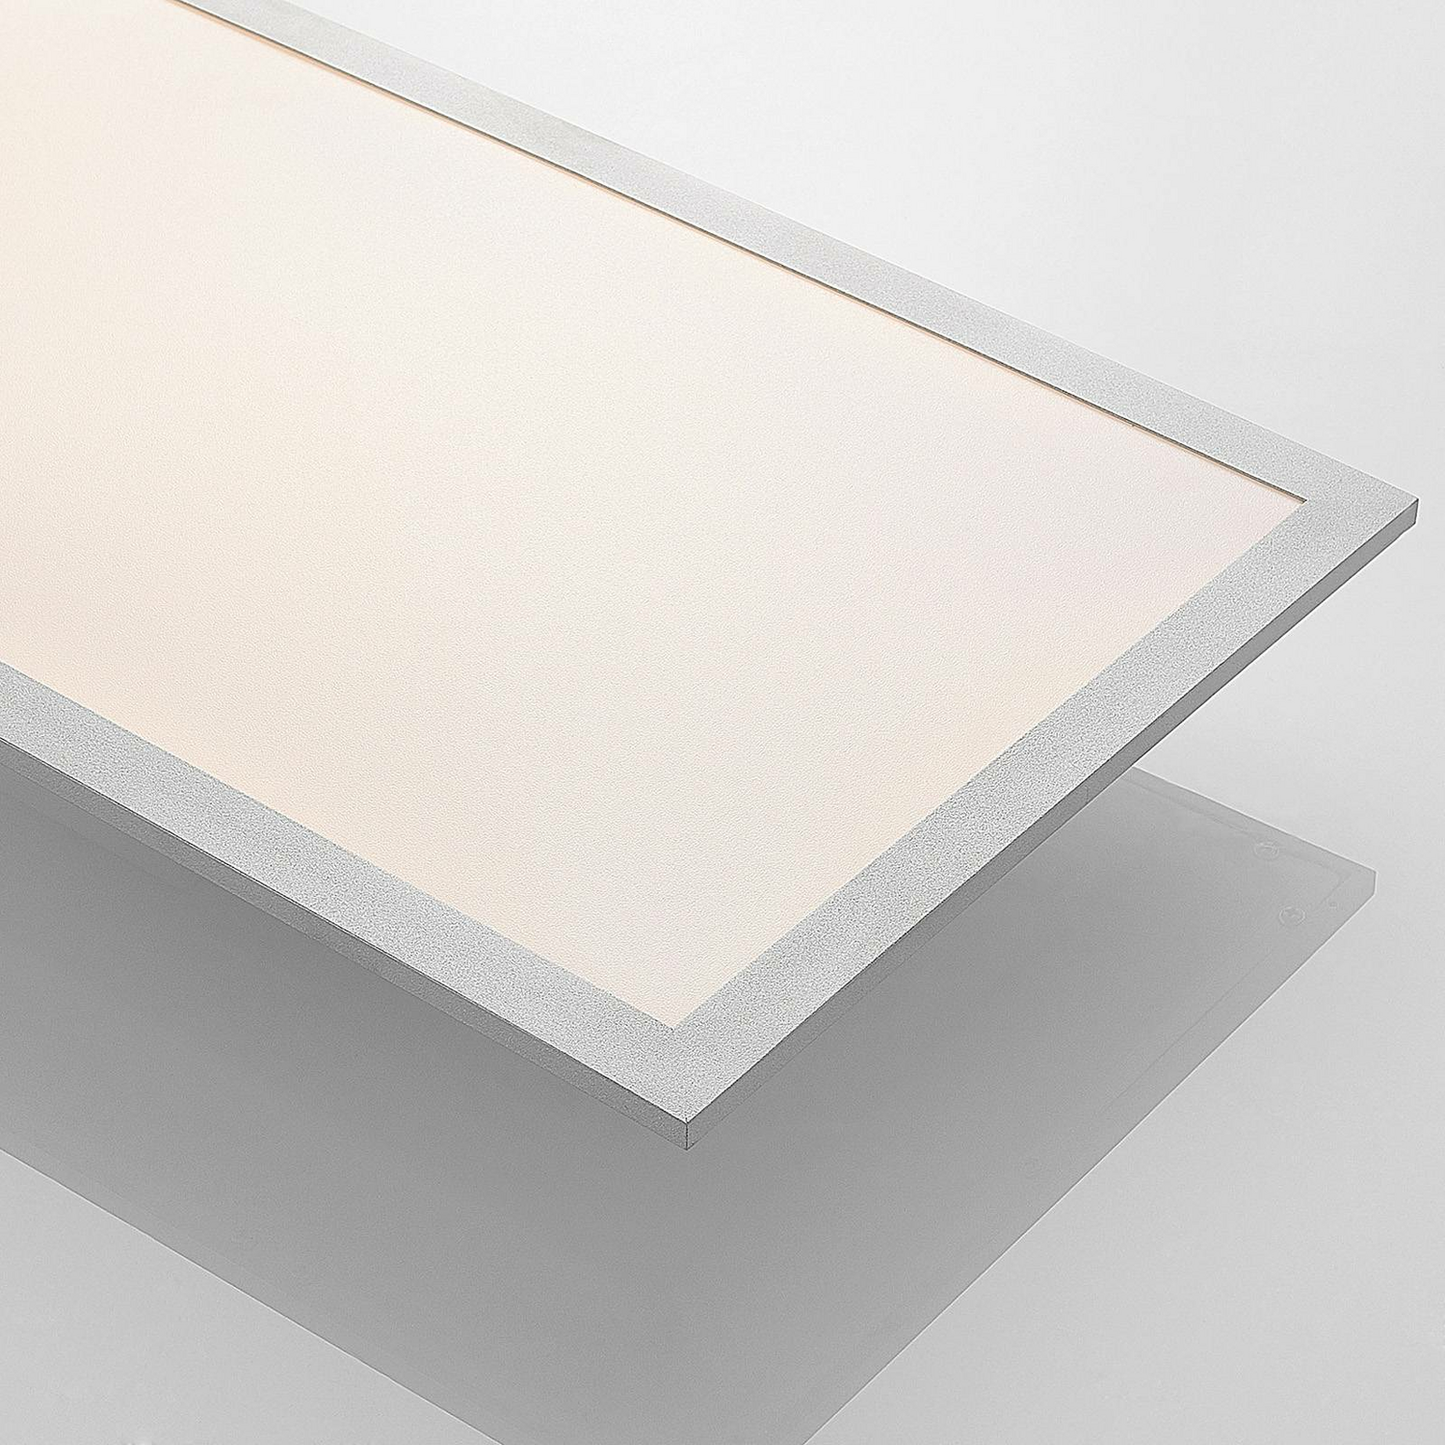 Lindby Stenley LED-Panel Deckenleuchte Deckenlampe Lampe 119 x 29 cm weiß sil994